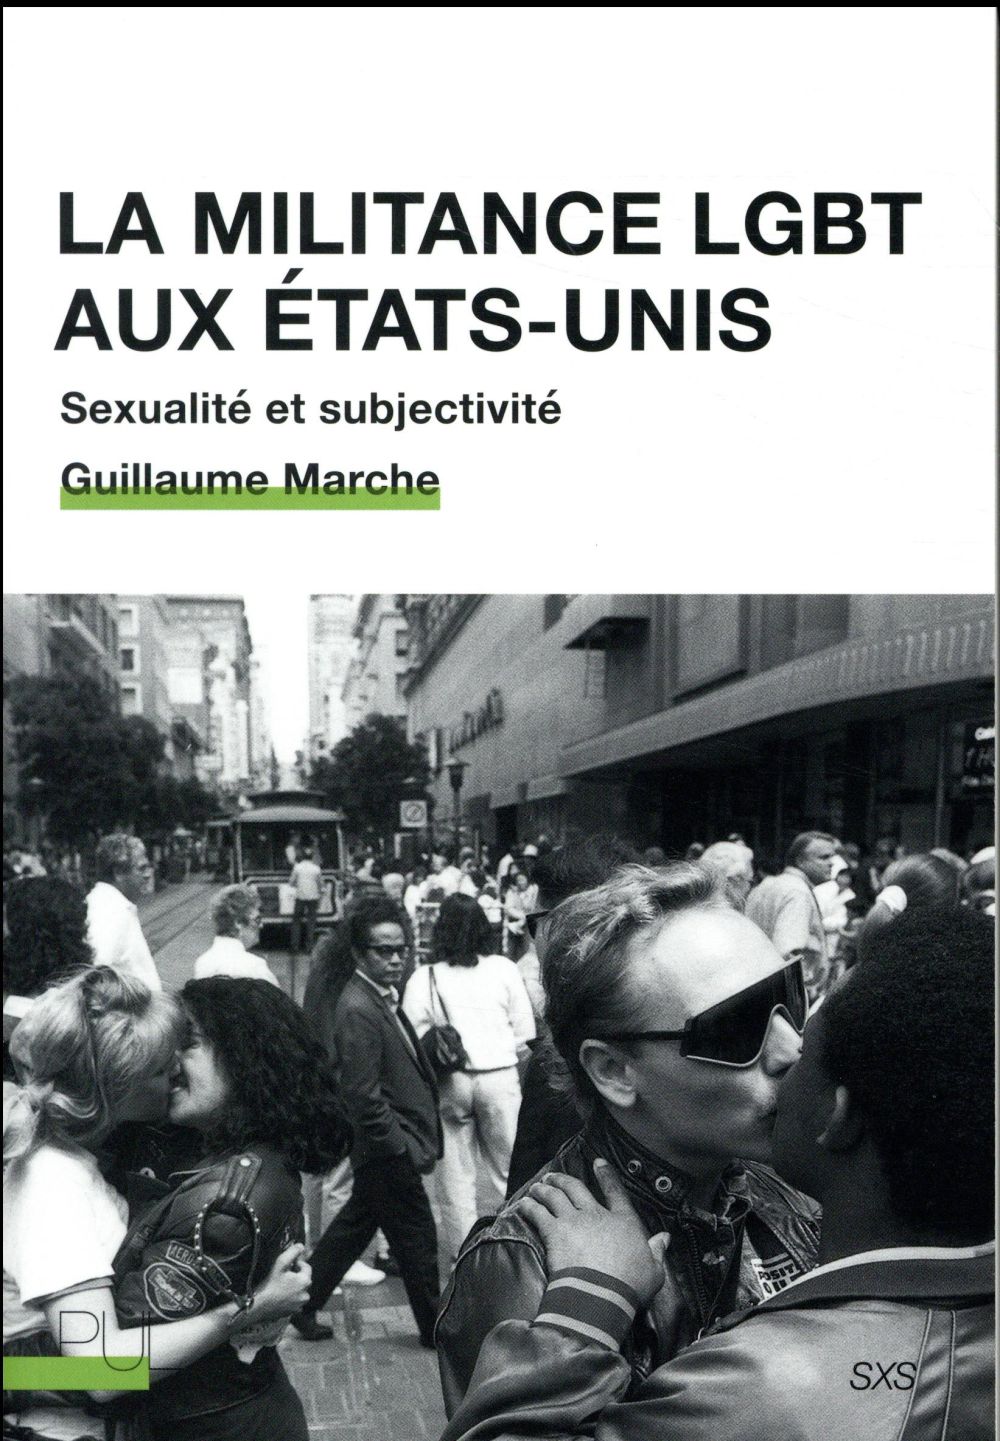 LA MILITANCE LGBT AUX ETATS-UNIS